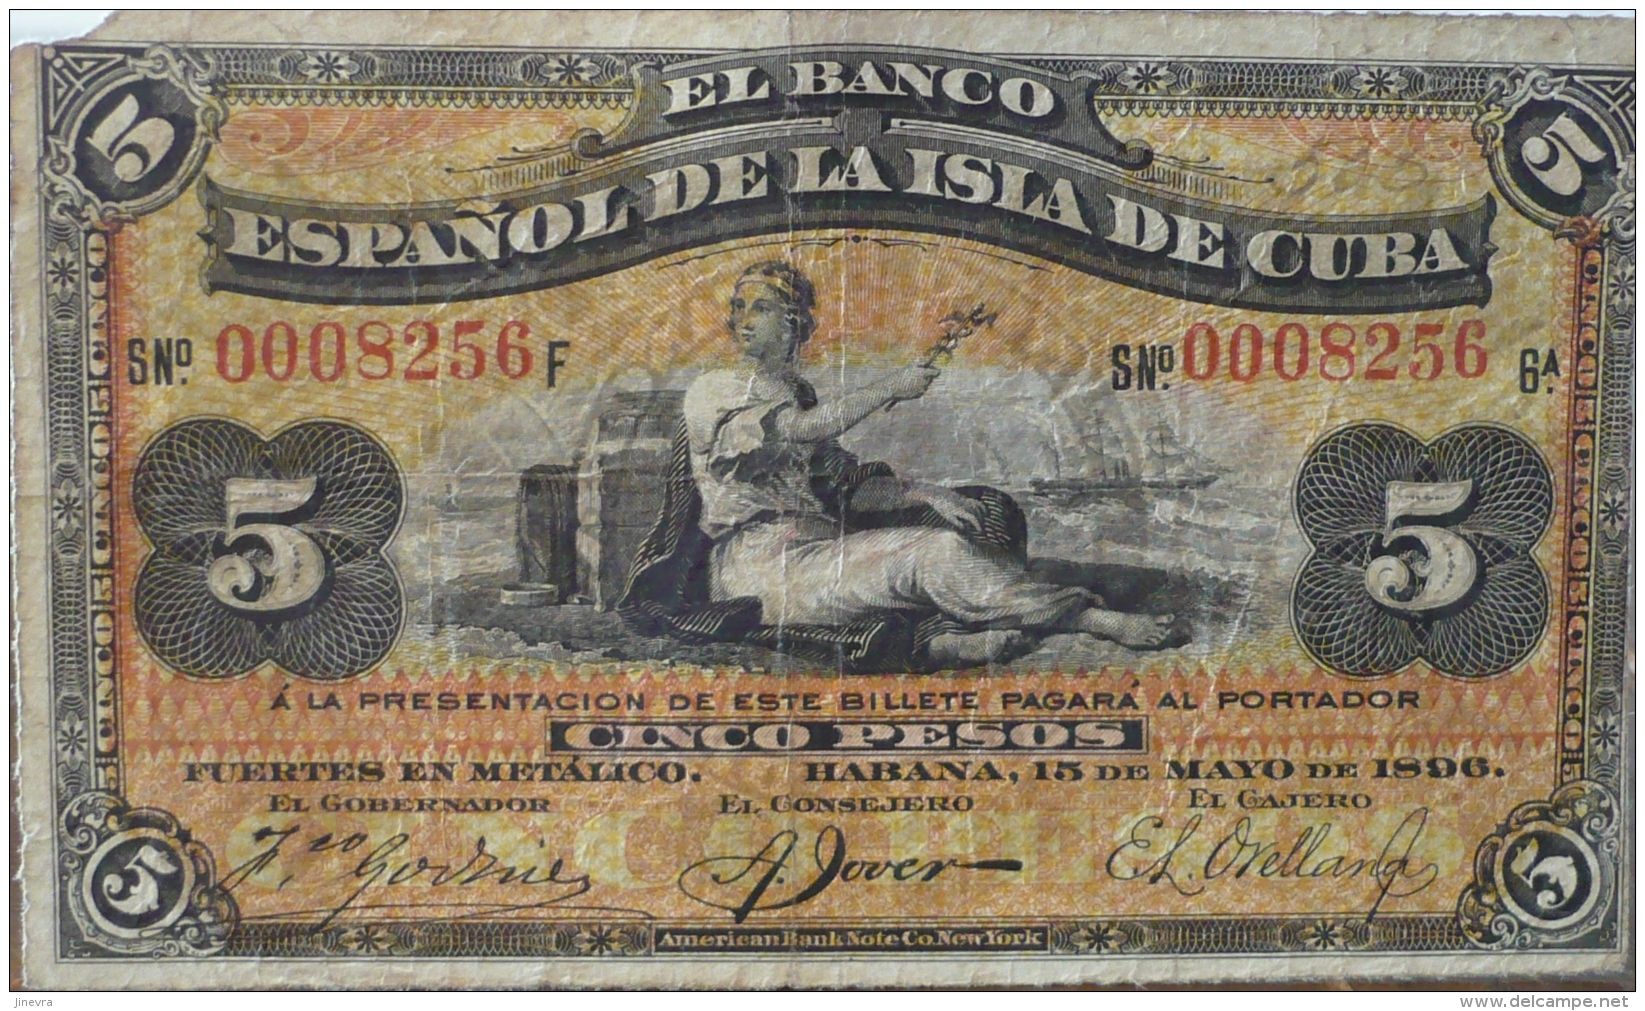 BANCO NACIONAL 5 PESOS 1898 PICK 48a - Cuba